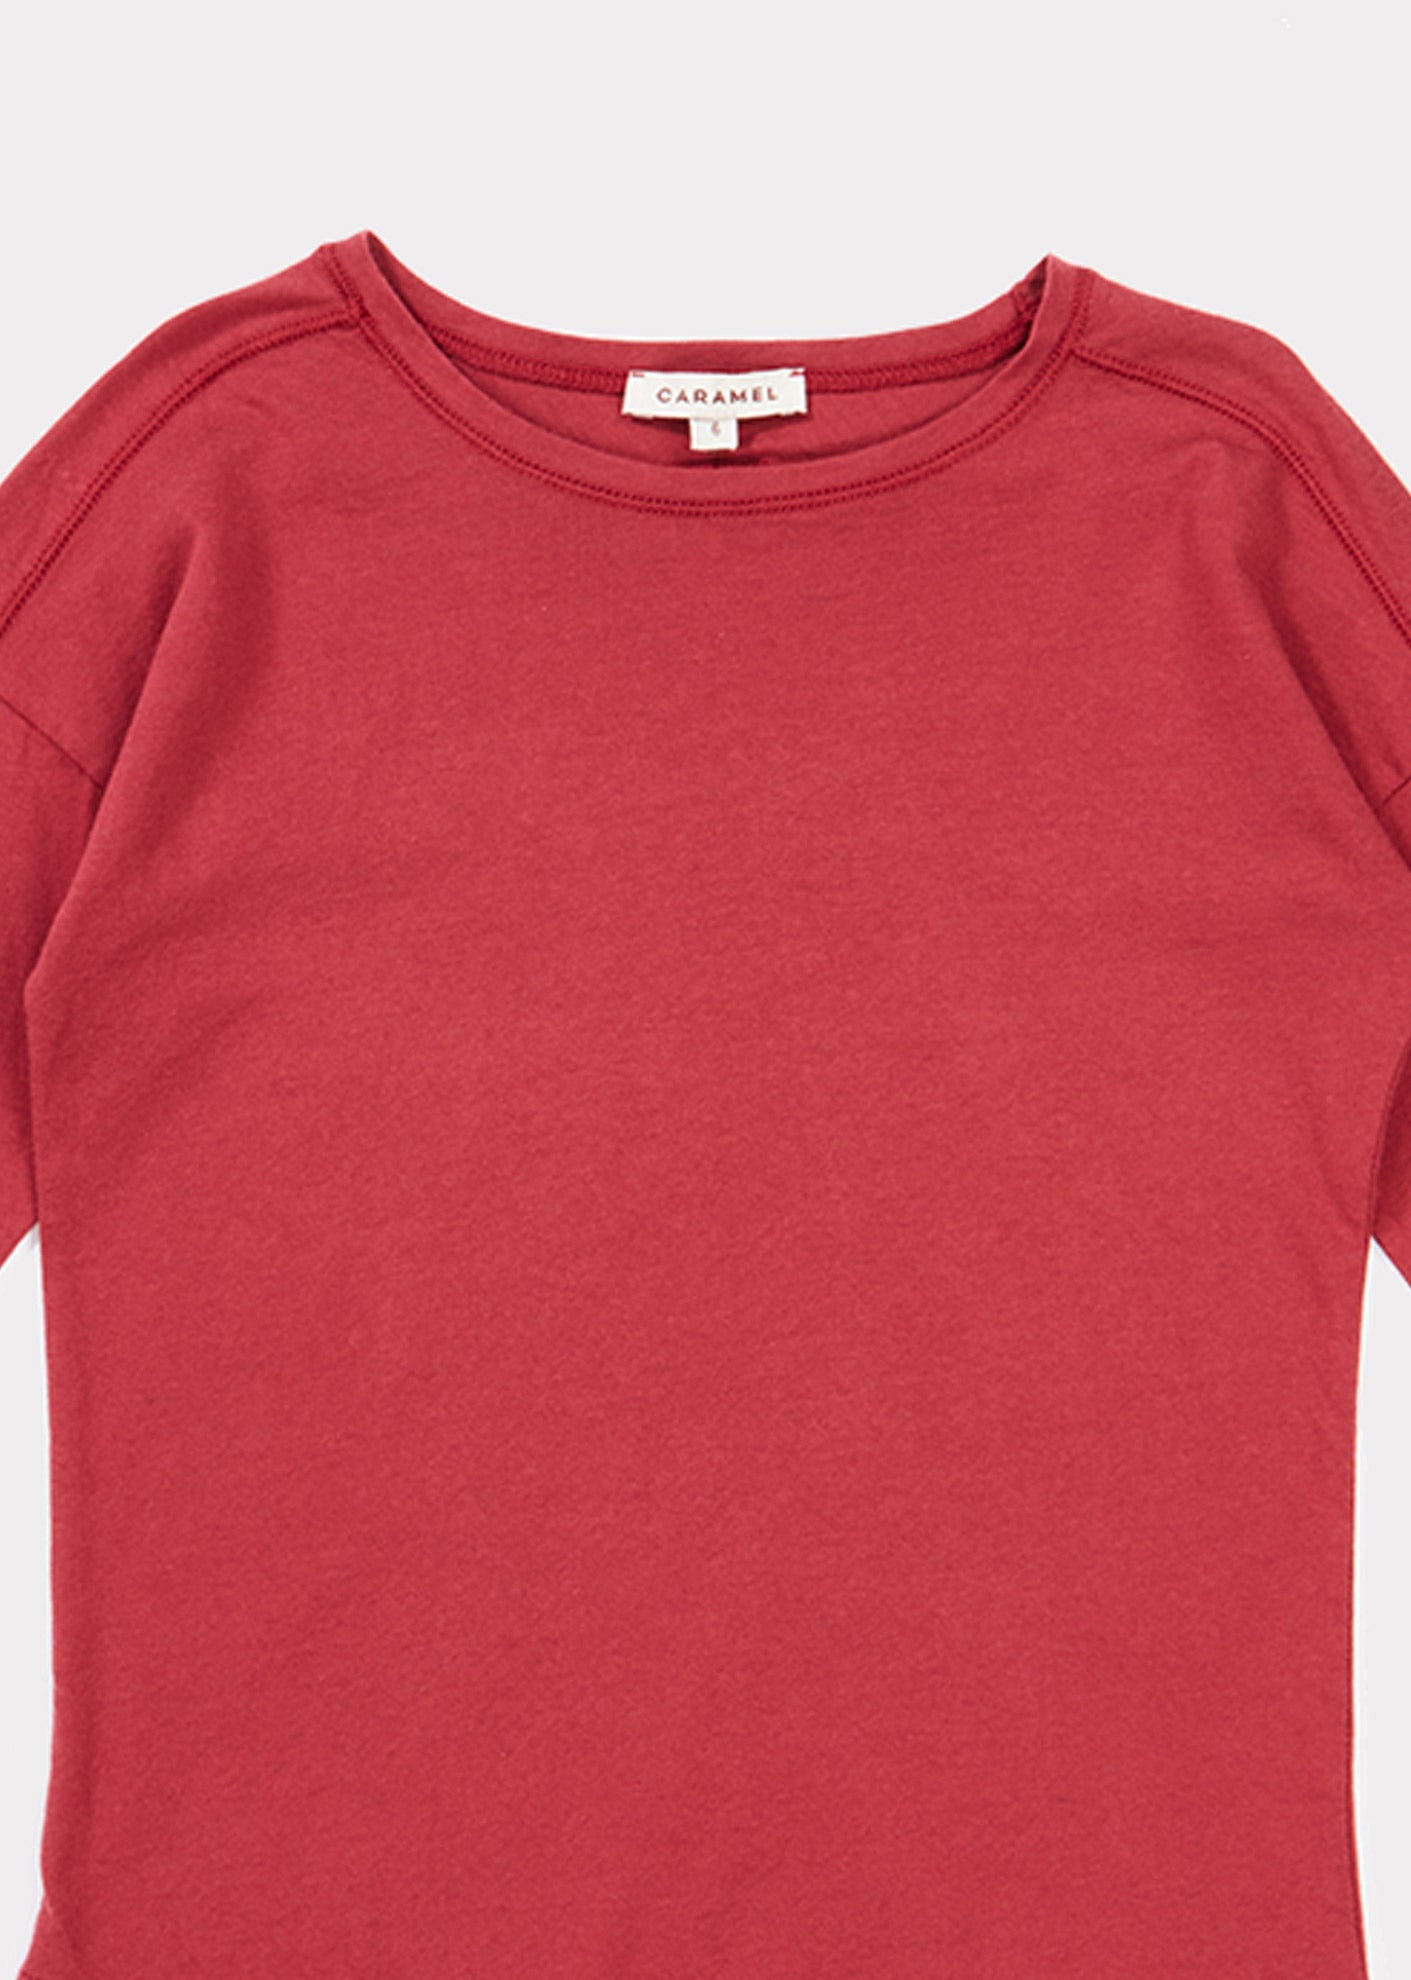 Girls Dark Red Cotton Shirt